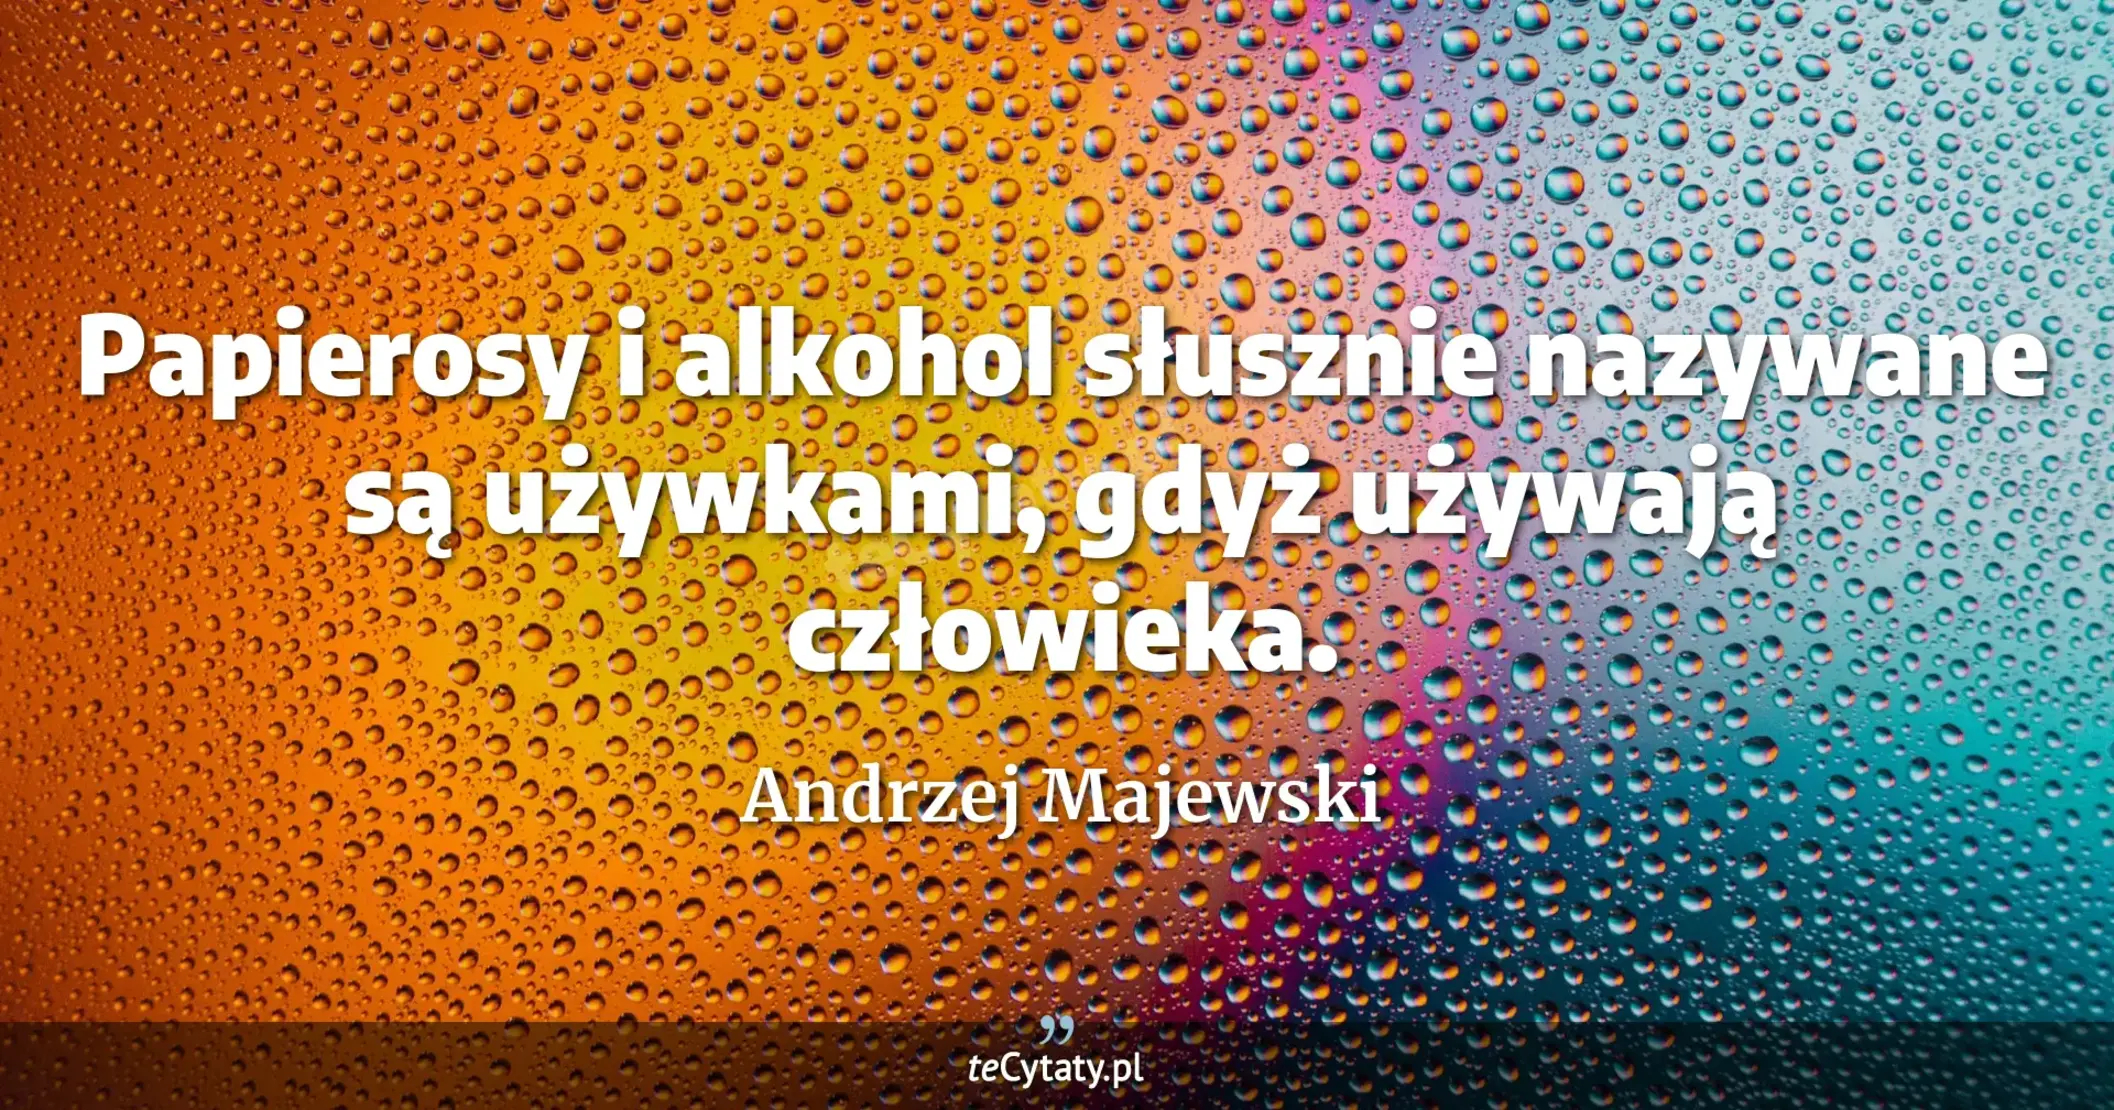 Papierosy i alkohol słusznie nazywane są używkami, gdyż używają człowieka. - Andrzej Majewski